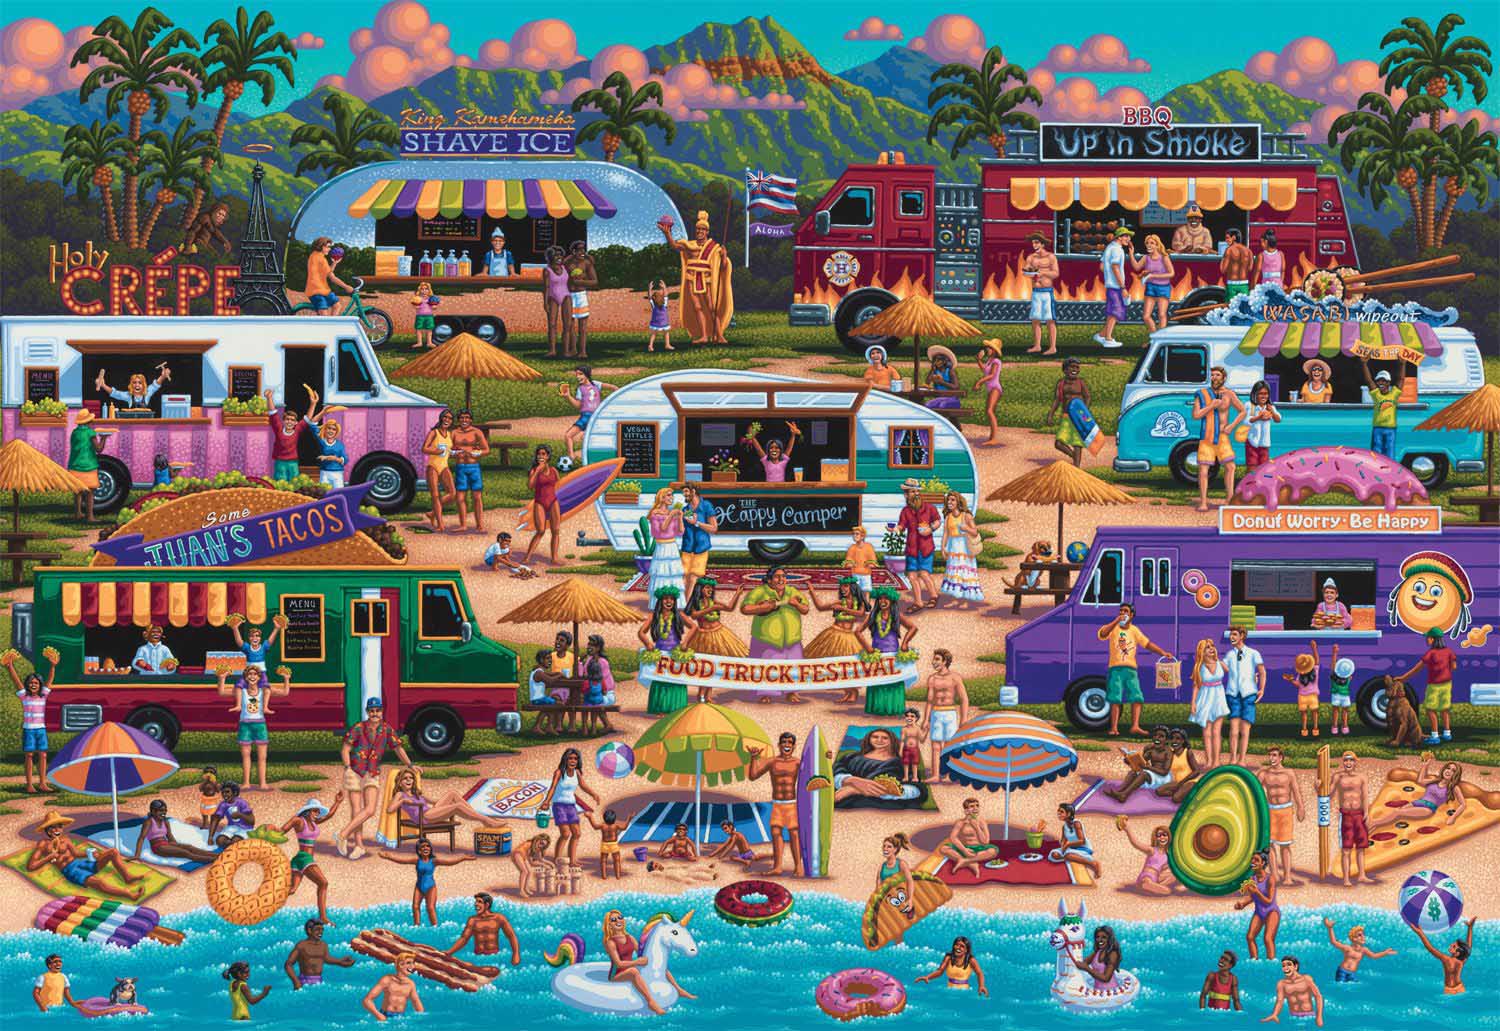 Hawaiian Food Truck Festival Summer Jigsaw Puzzle